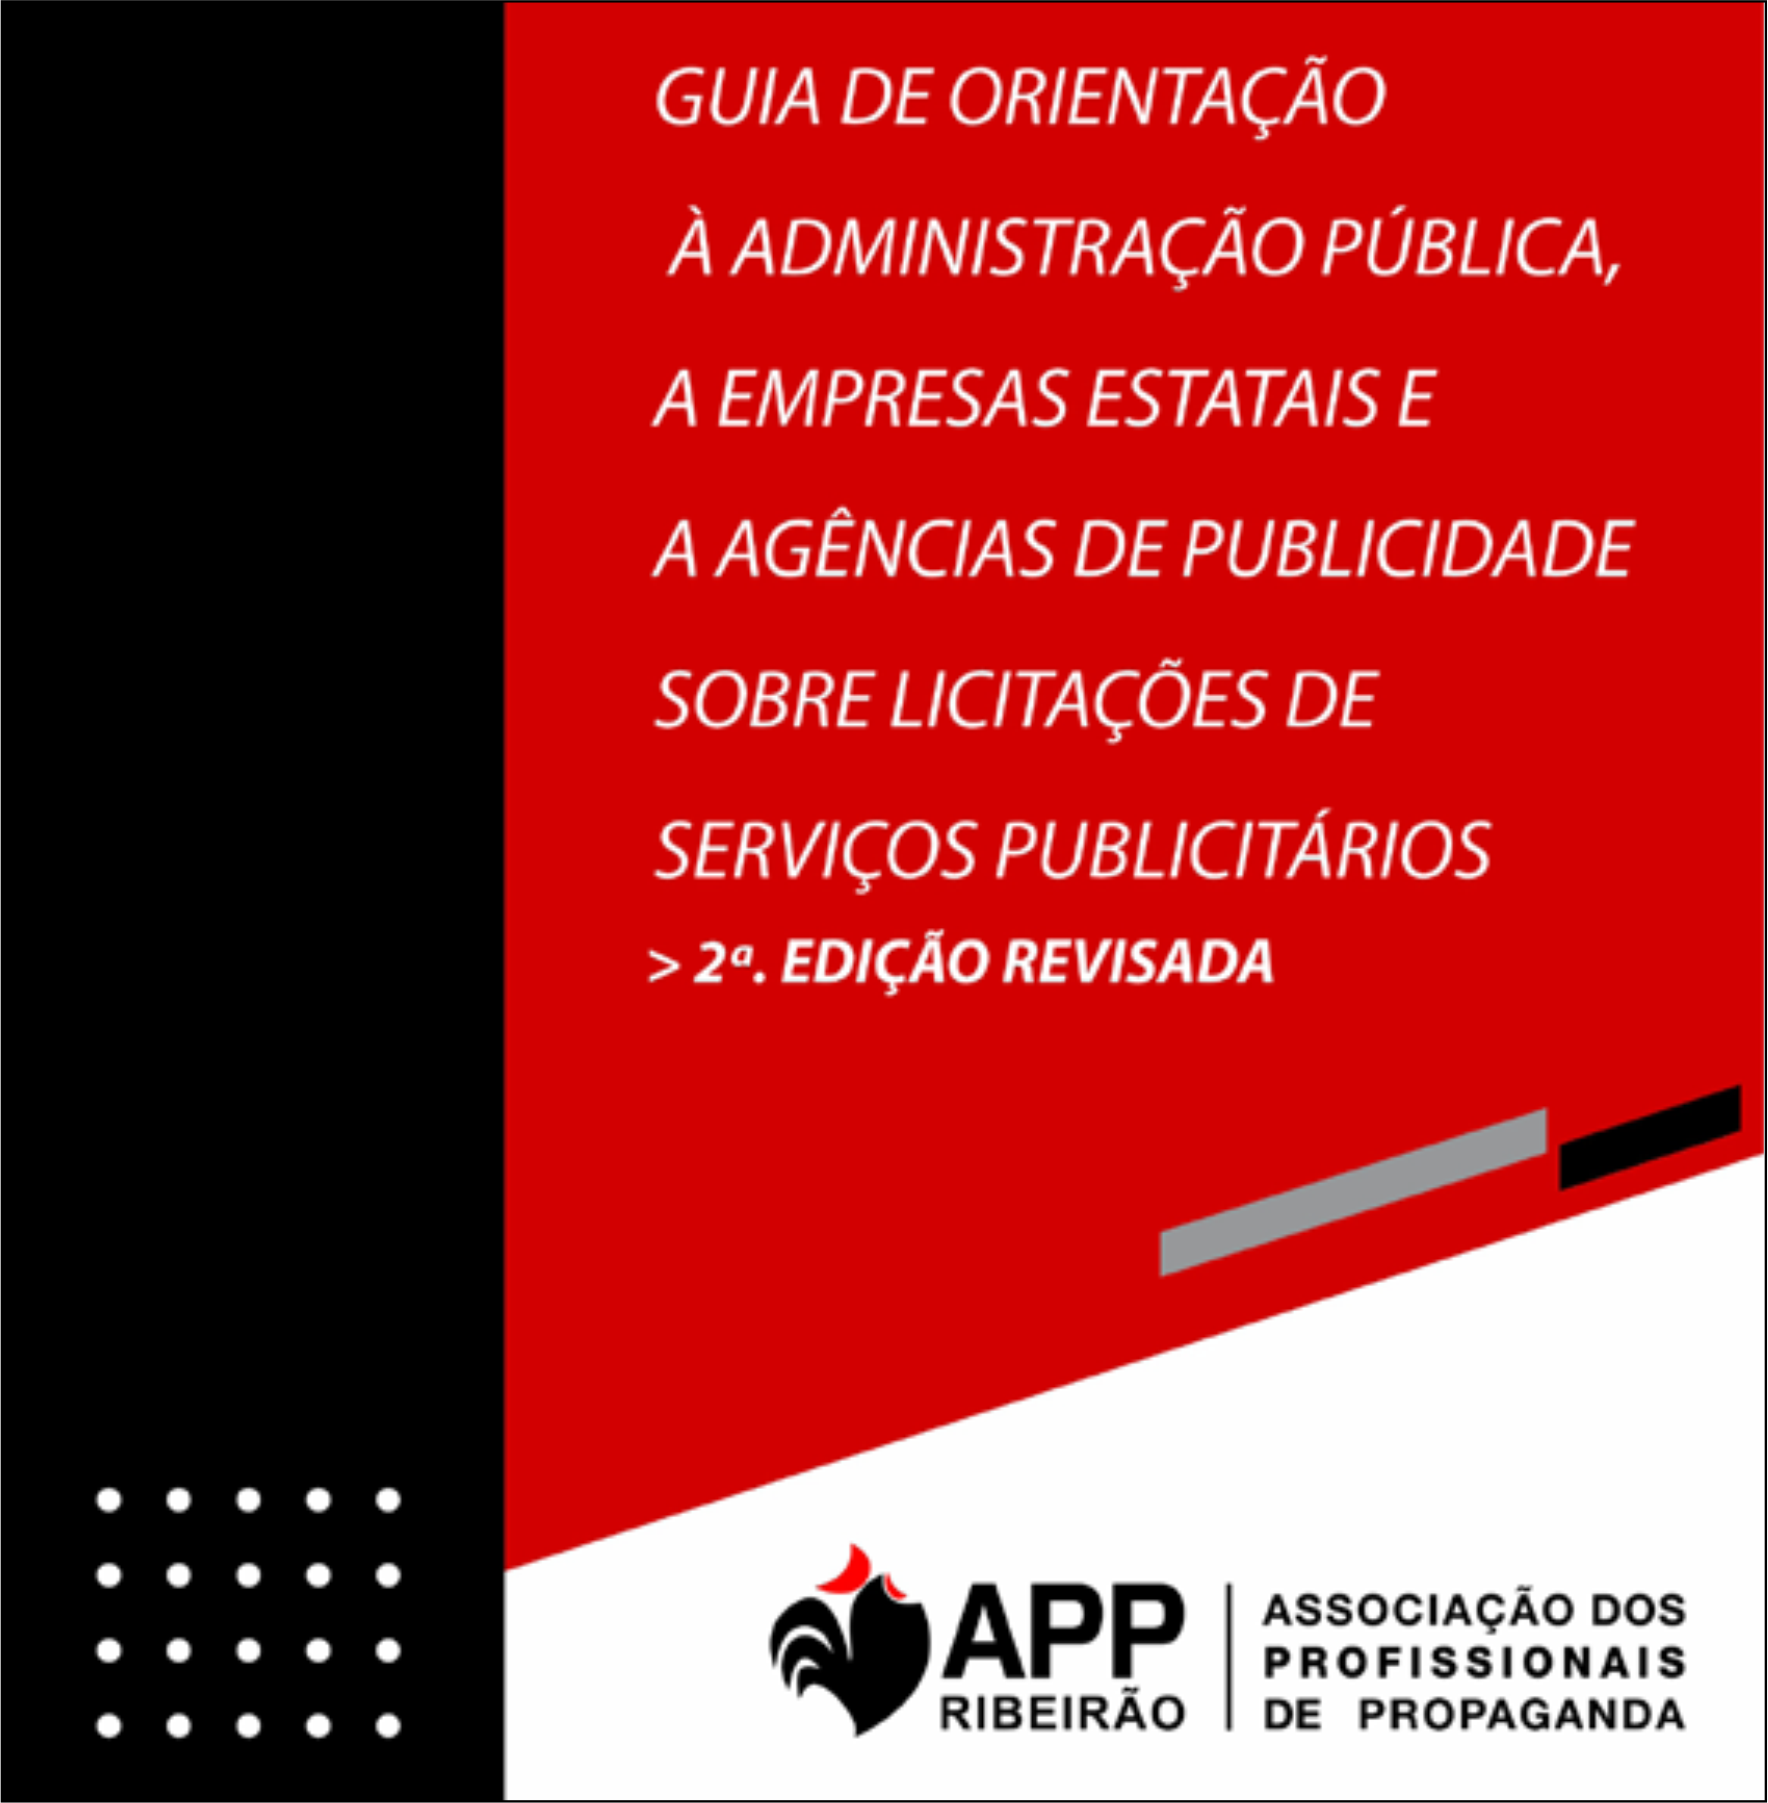 APP Ribeirão lança e-book sobre publicidade governamental